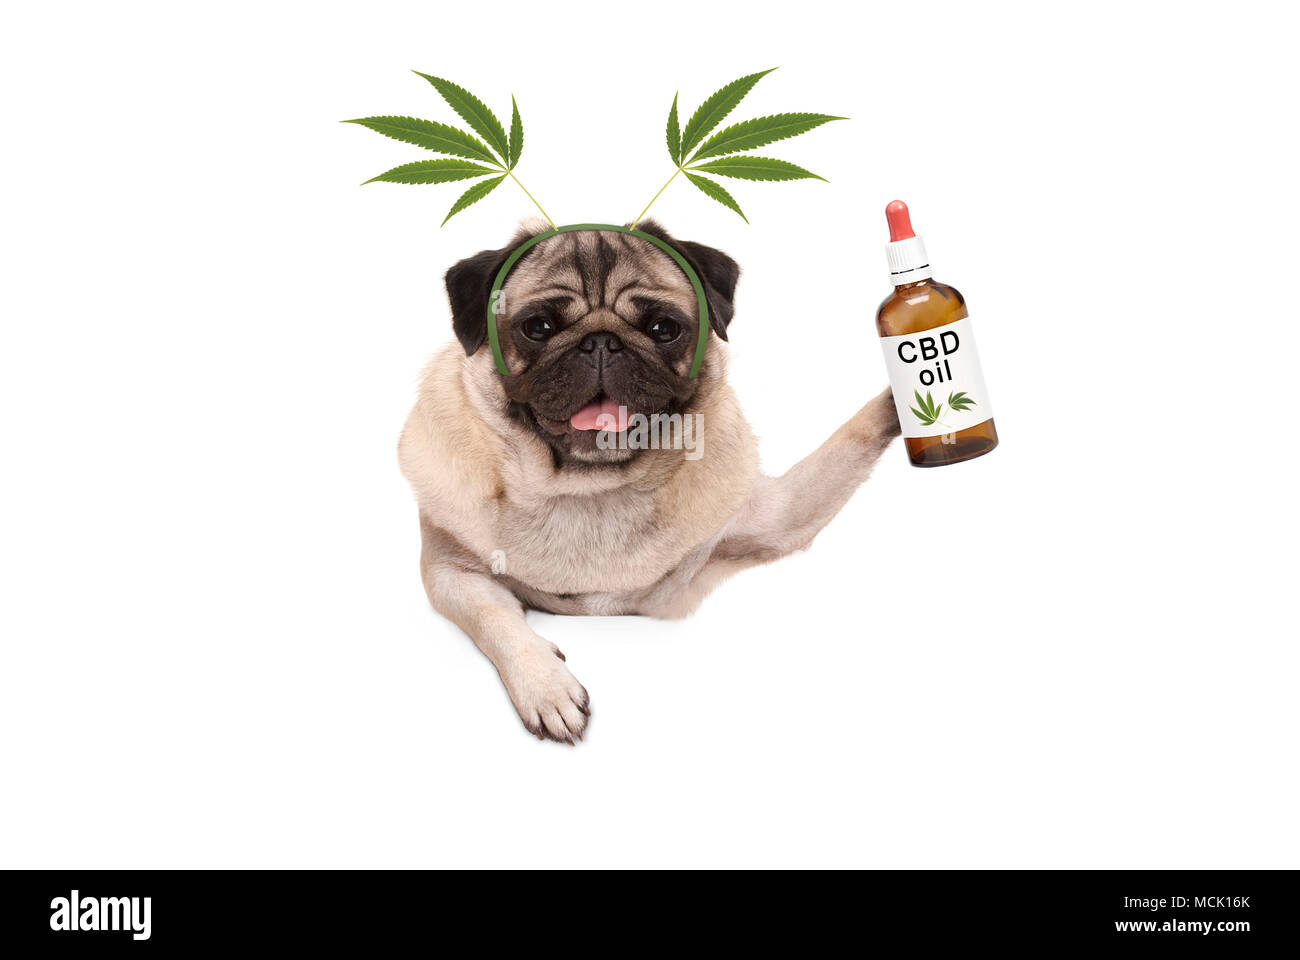 Carino sorridente pug cucciolo di cane tenendo in mano una bottiglia di olio in CBD indossando la marijuana la canapa leaf diadema, isolati su sfondo bianco Foto Stock